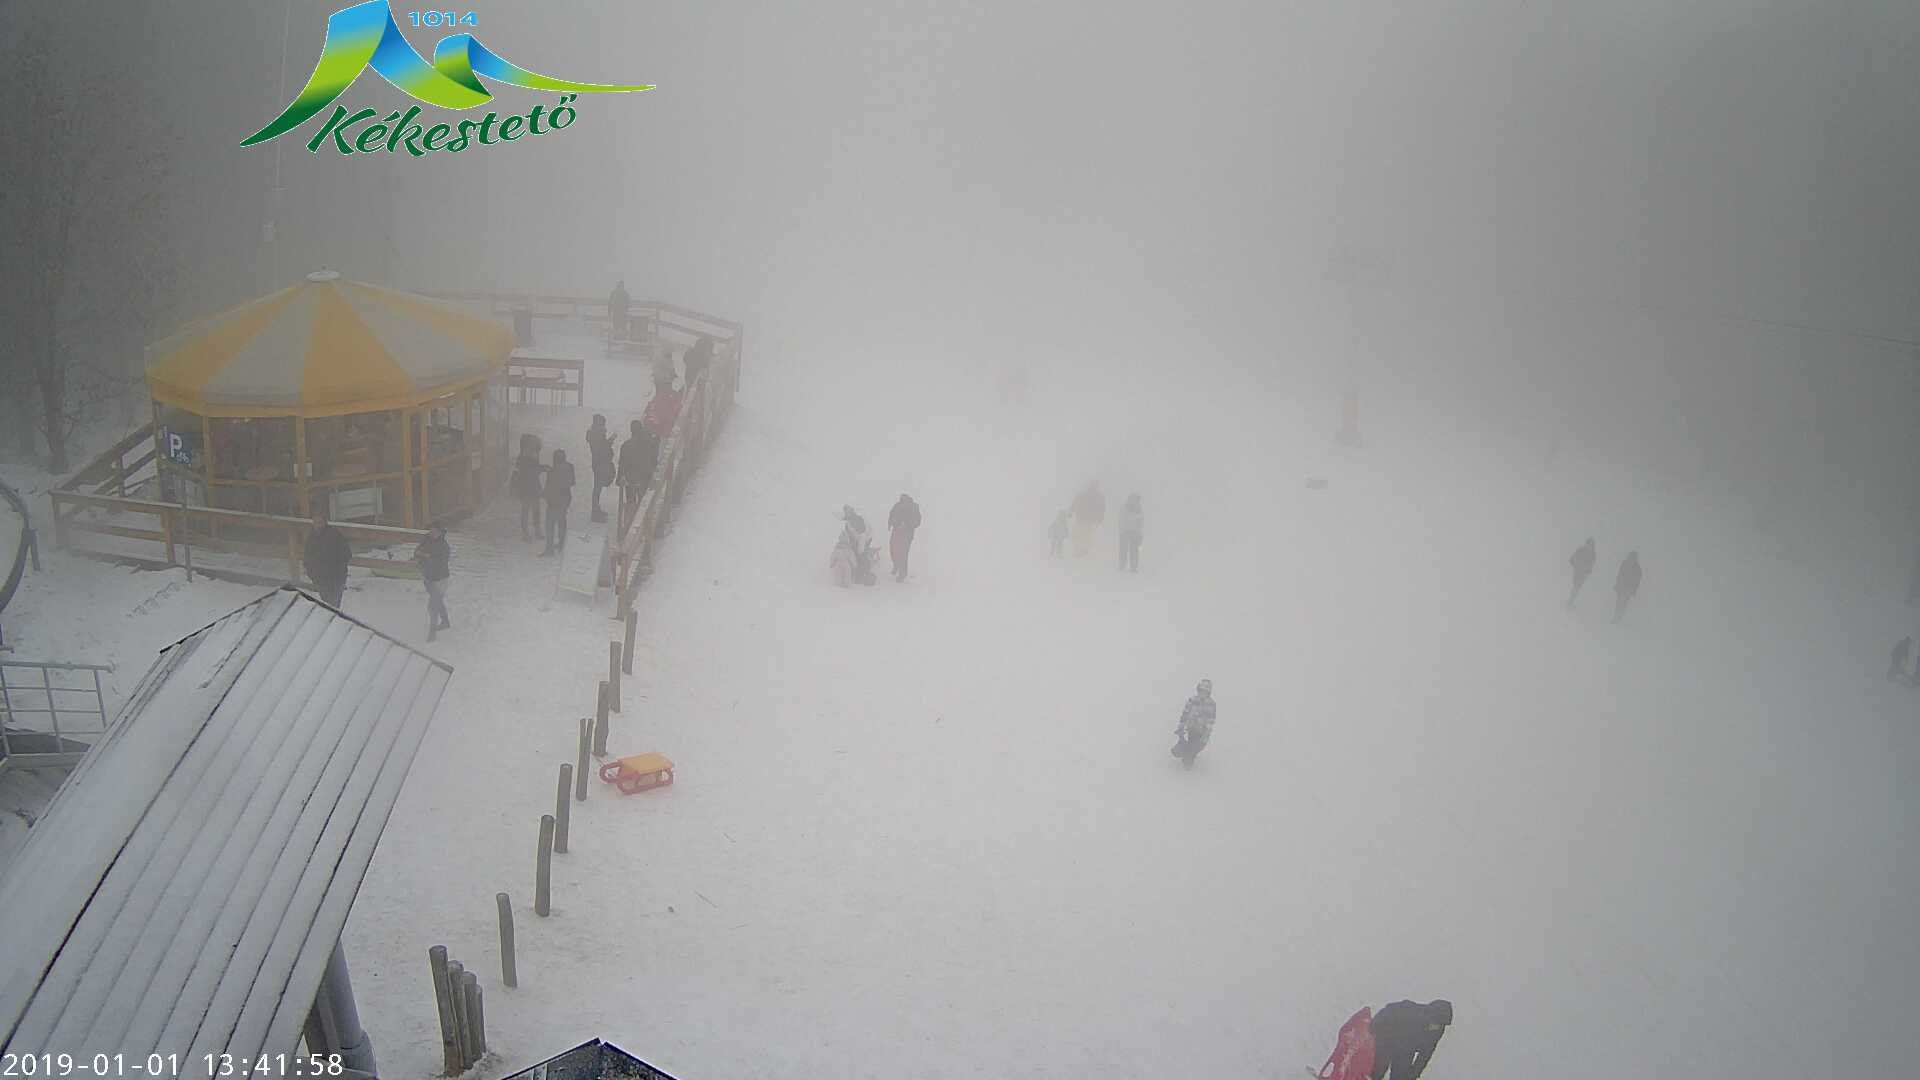 Webkamera: tegnap délután már havazott Kékestetőn